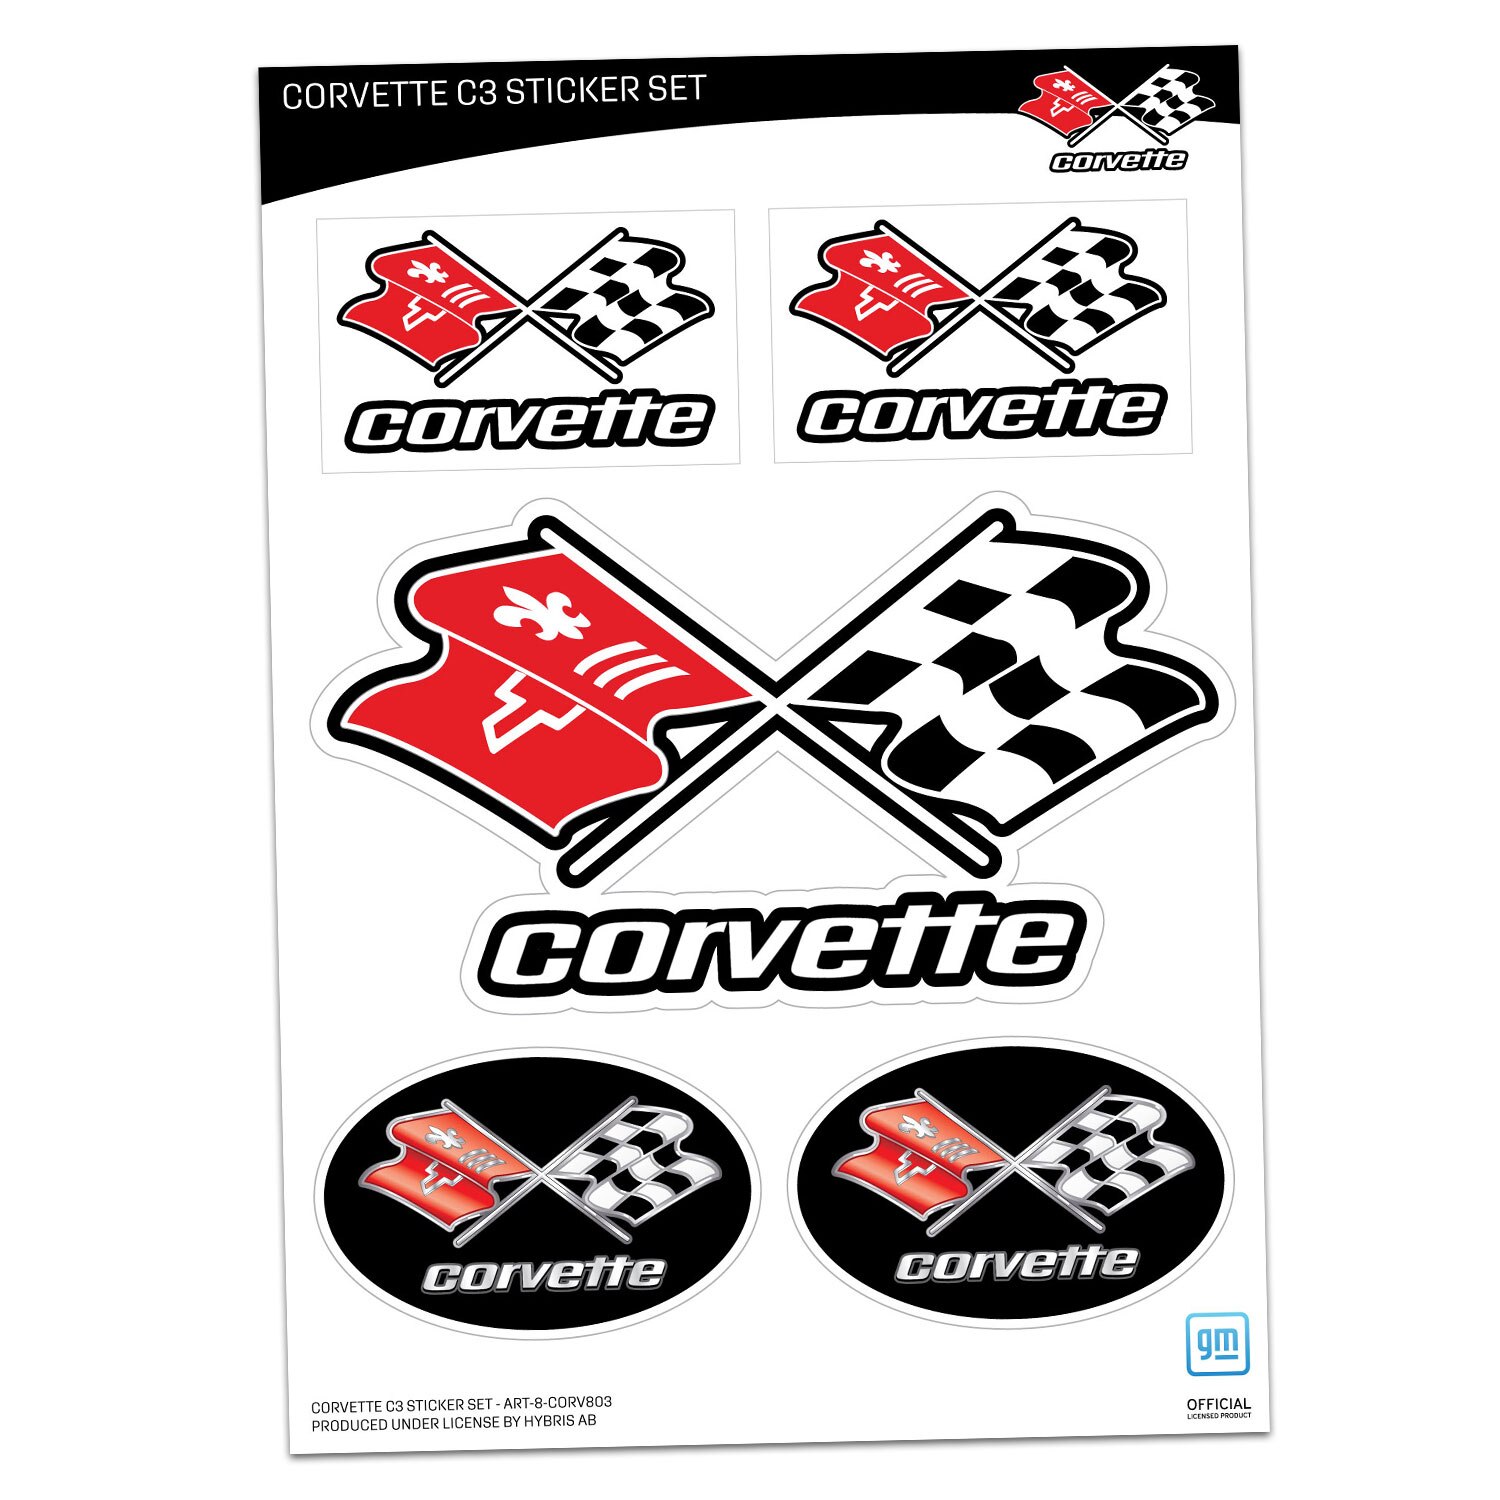 Corvette C3 Sticker Set